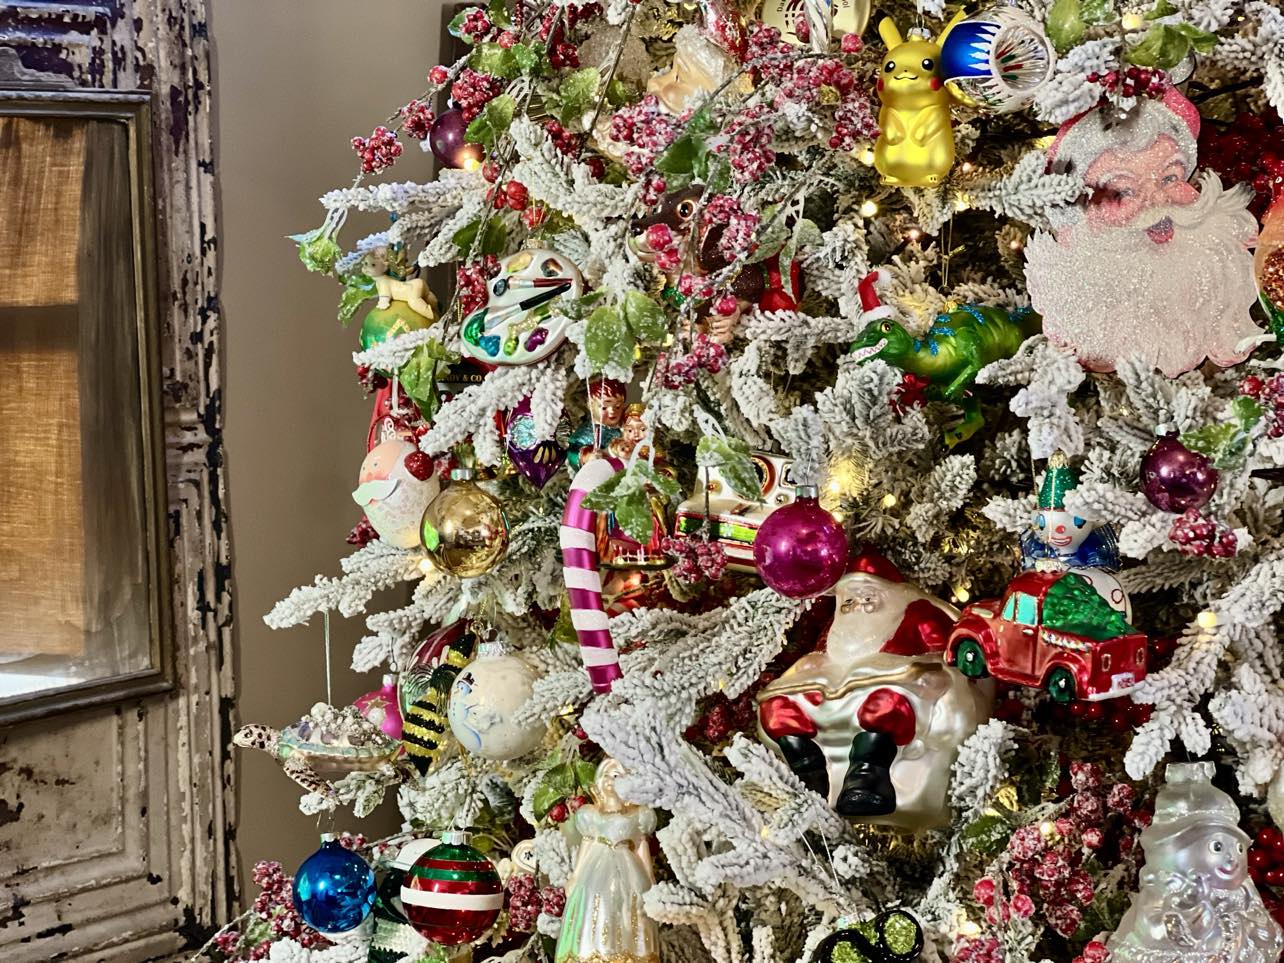 Christmas Tree Reveal